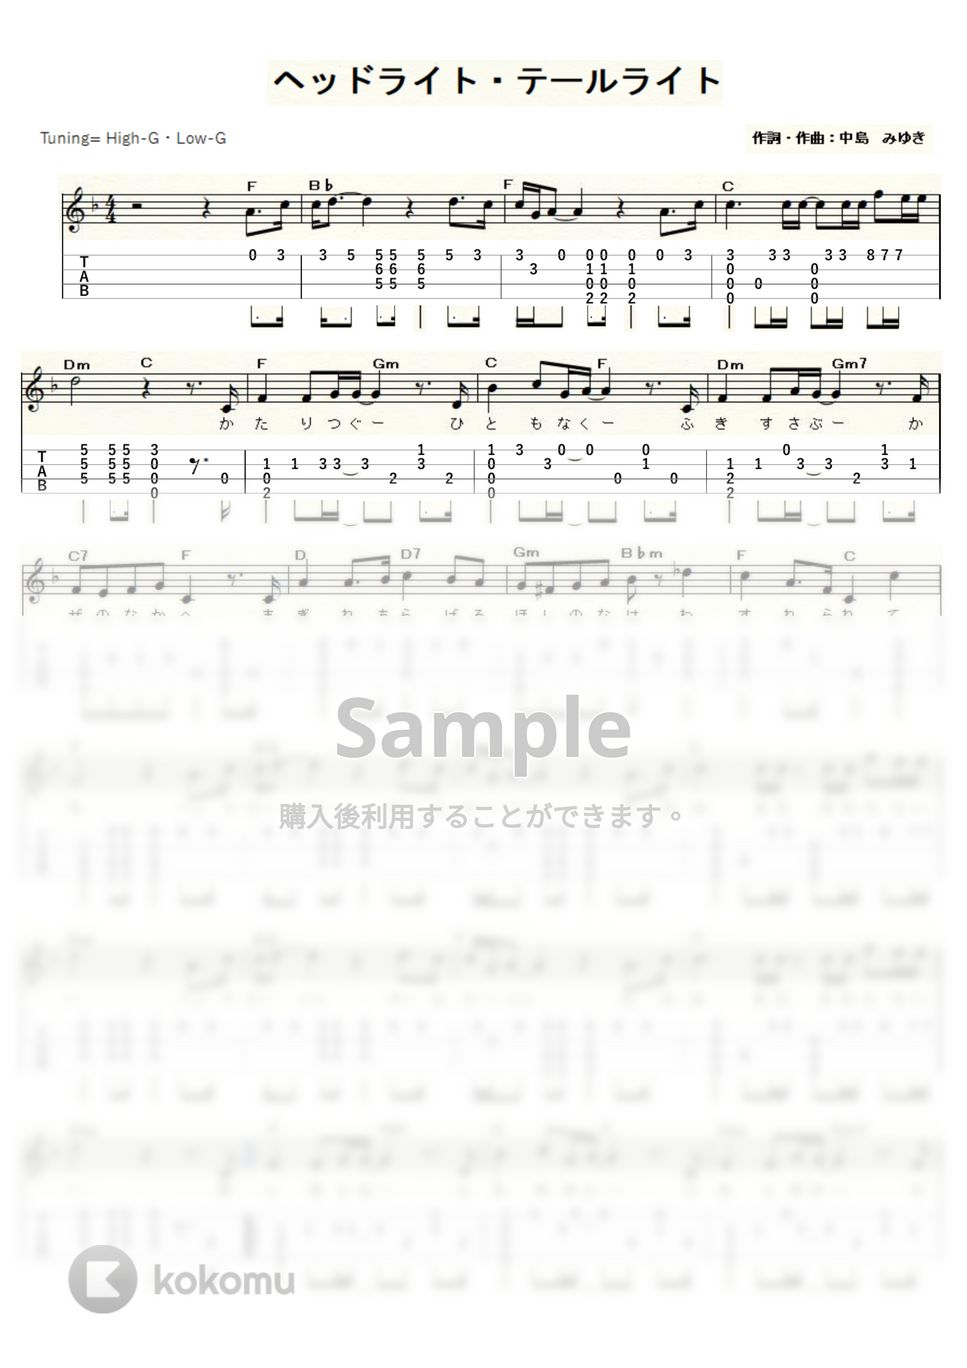 中島みゆき - ヘッドライト・テールライト (ｳｸﾚﾚｿﾛ / High-G,Low-G / 中級) by ukulelepapa